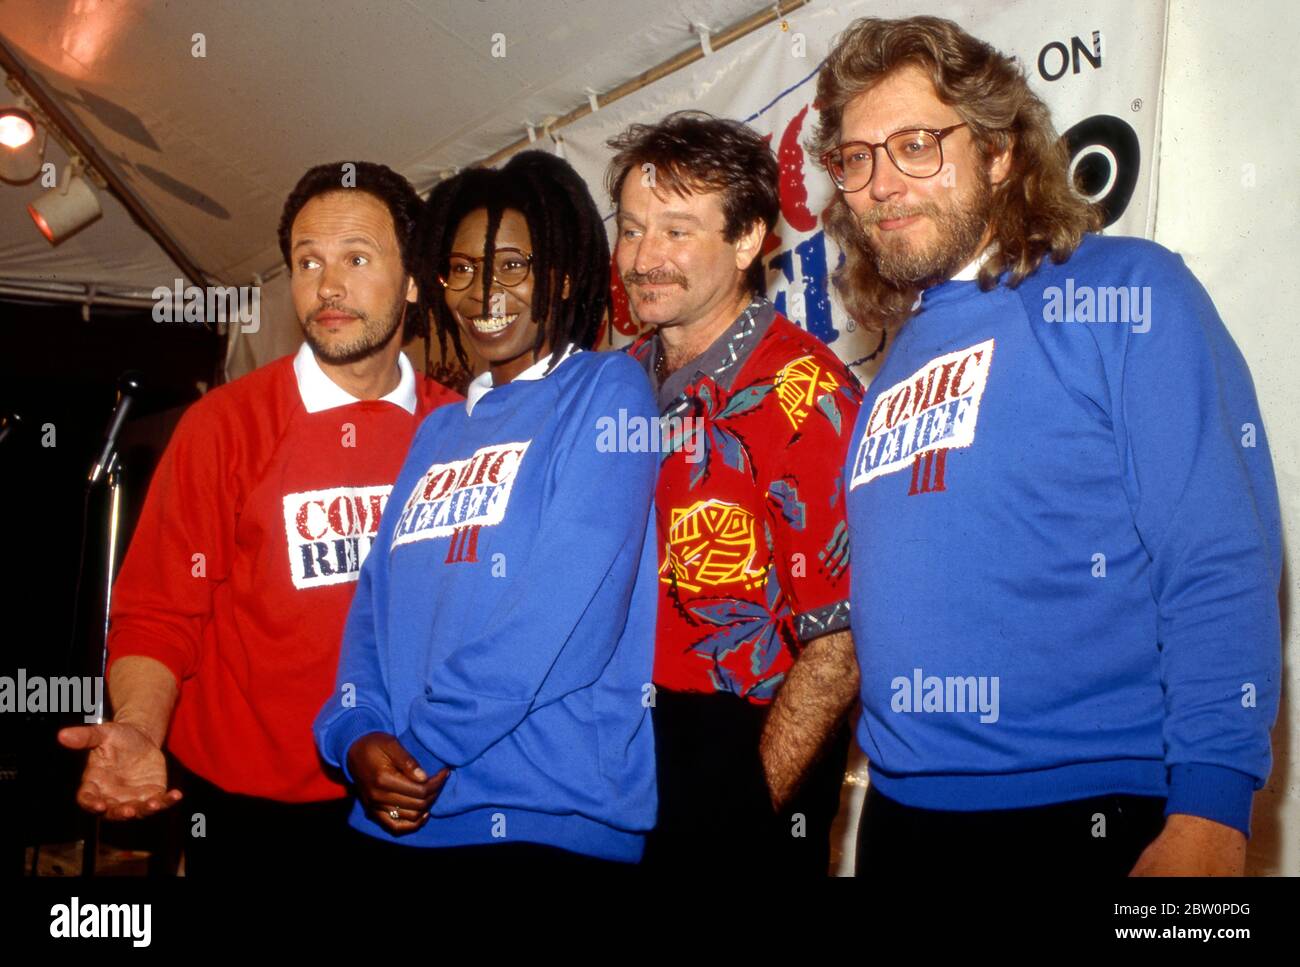 Pressekonferenz zu Comic Relief mit Billy Crystal, Whoopi Goldberg, Robin Williams und Produzent Bob Zmuda (von links nach rechts). Stockfoto